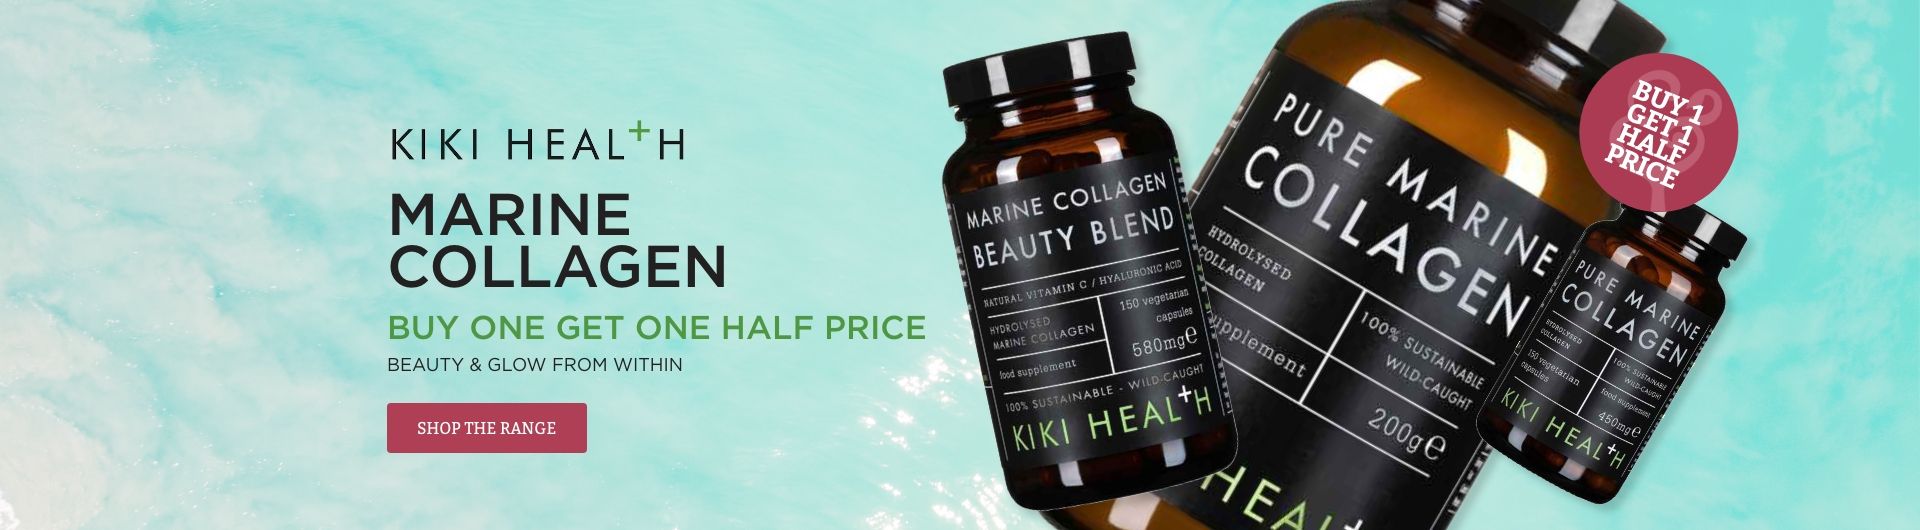 Kiki Health Marine Collagen Buy One Get One Half Price